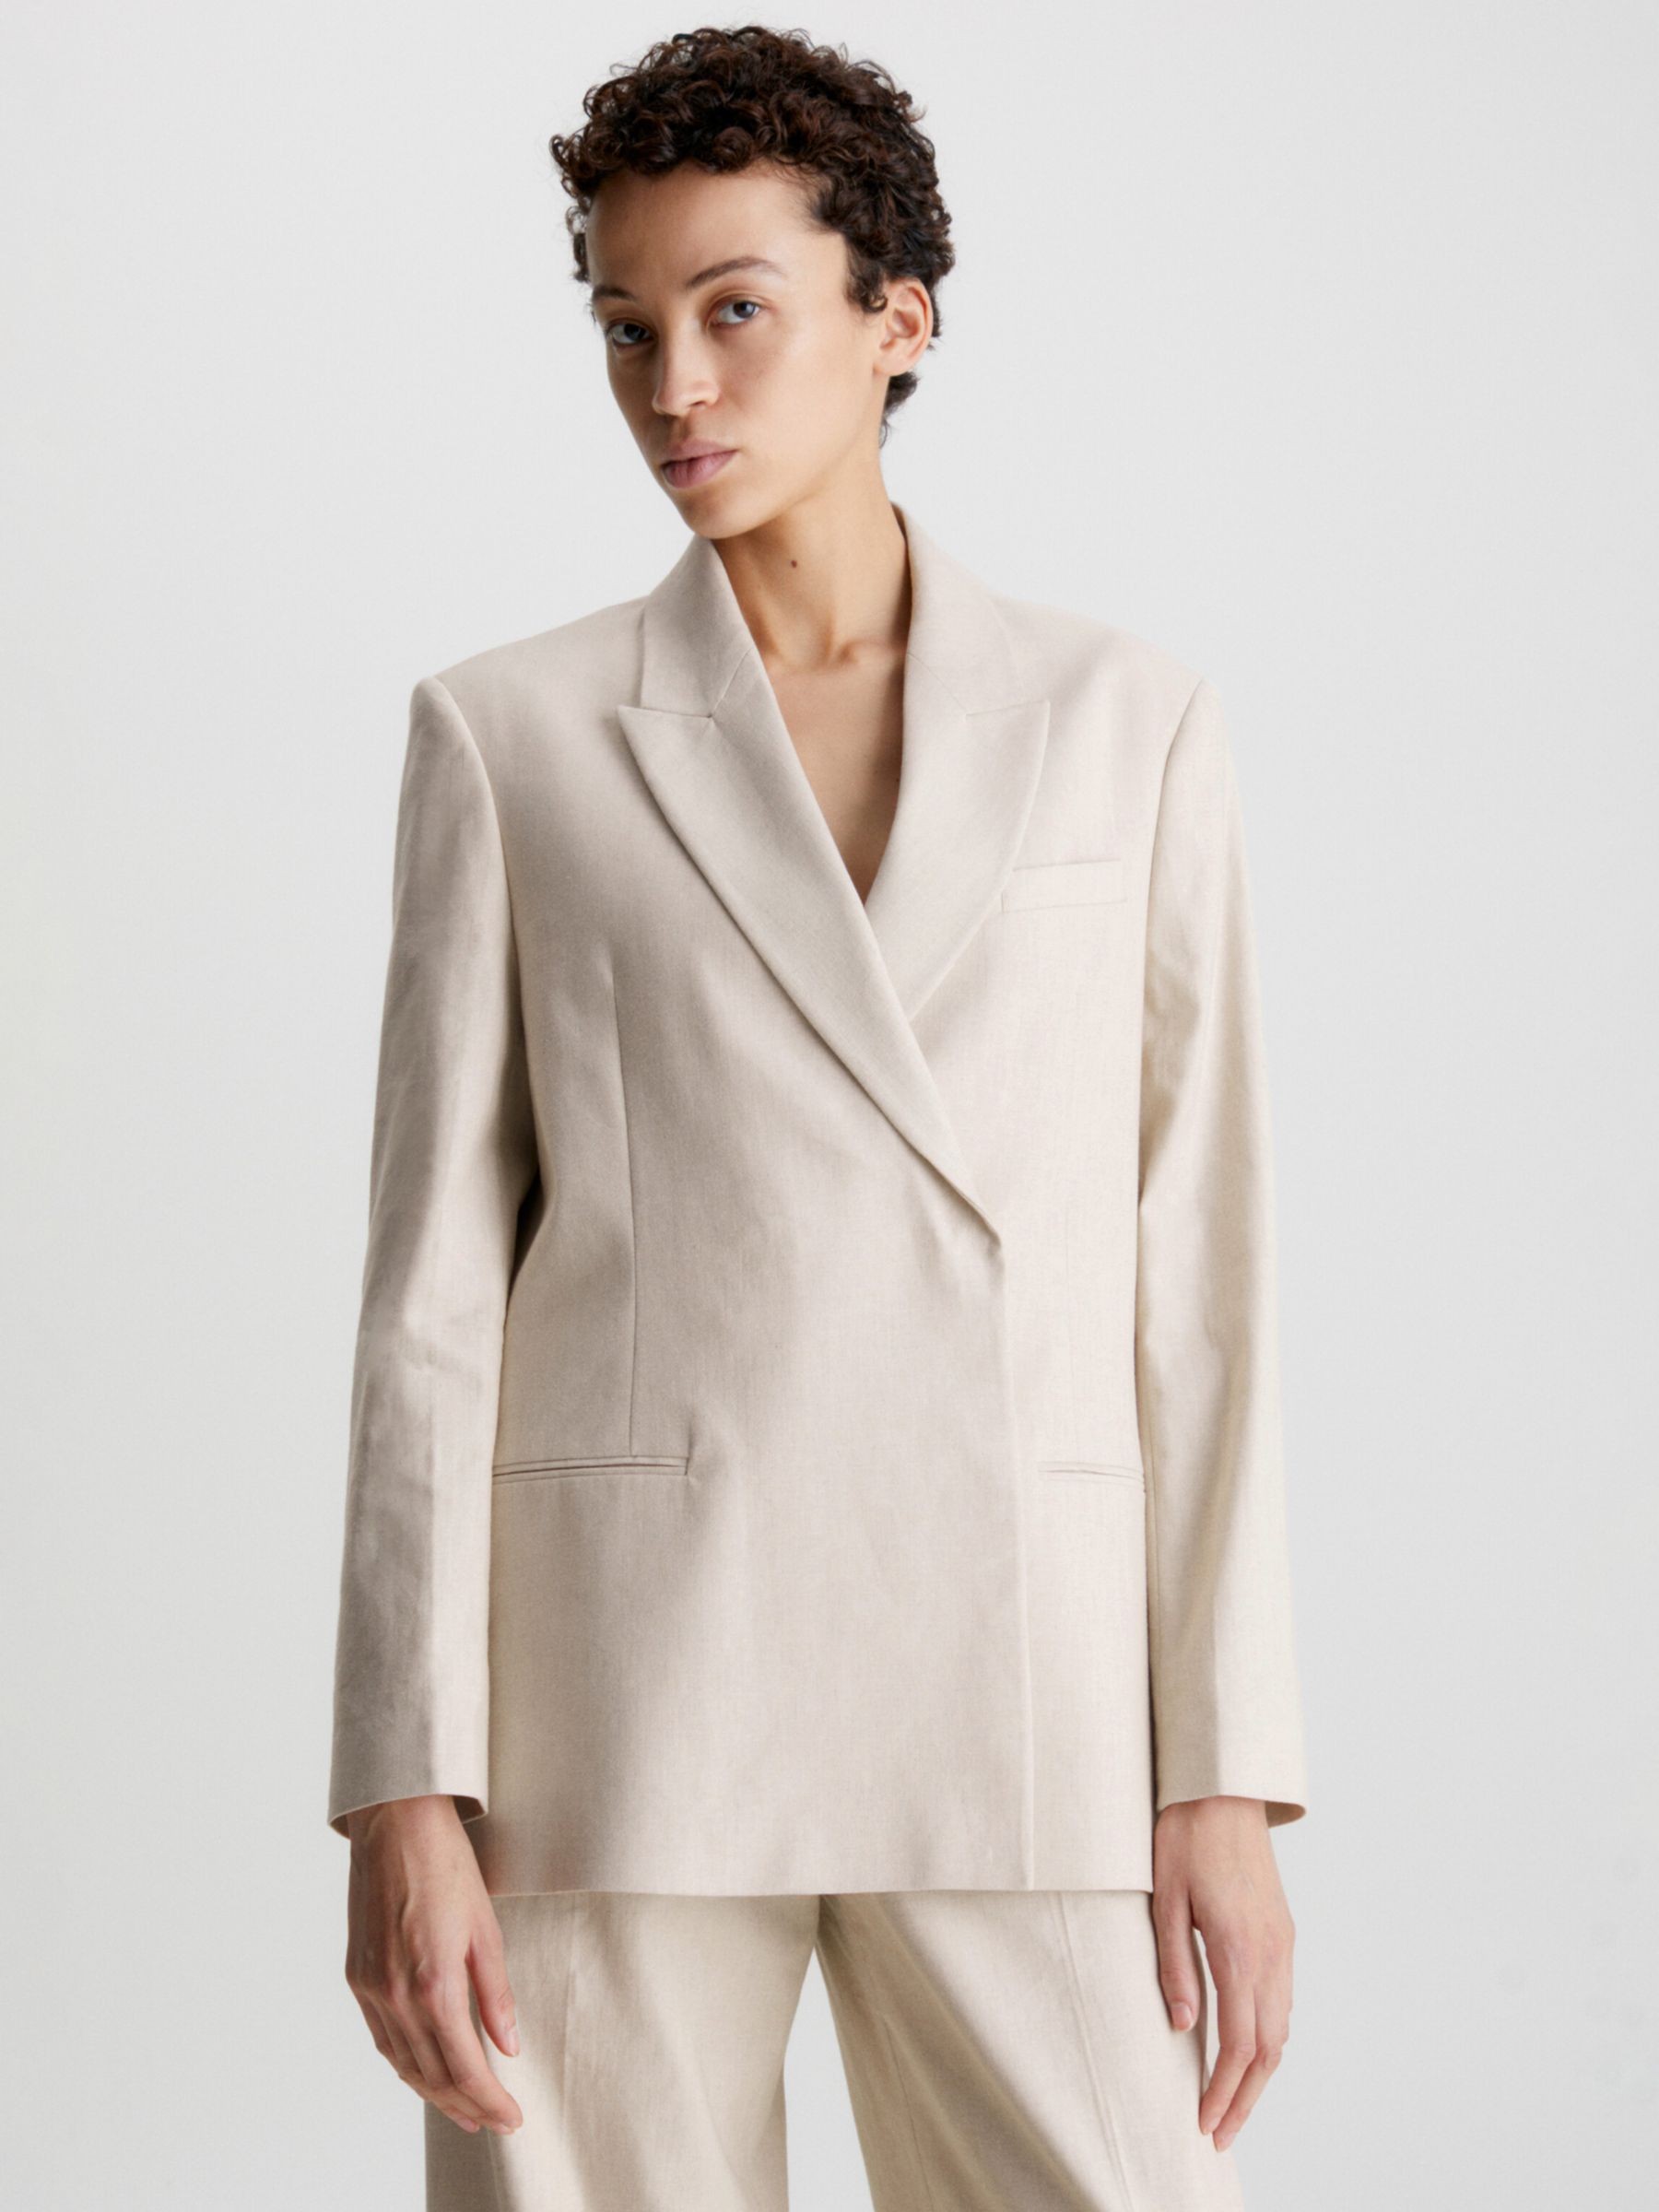 Calvin Klein Women's Tailored Blazer, Beige